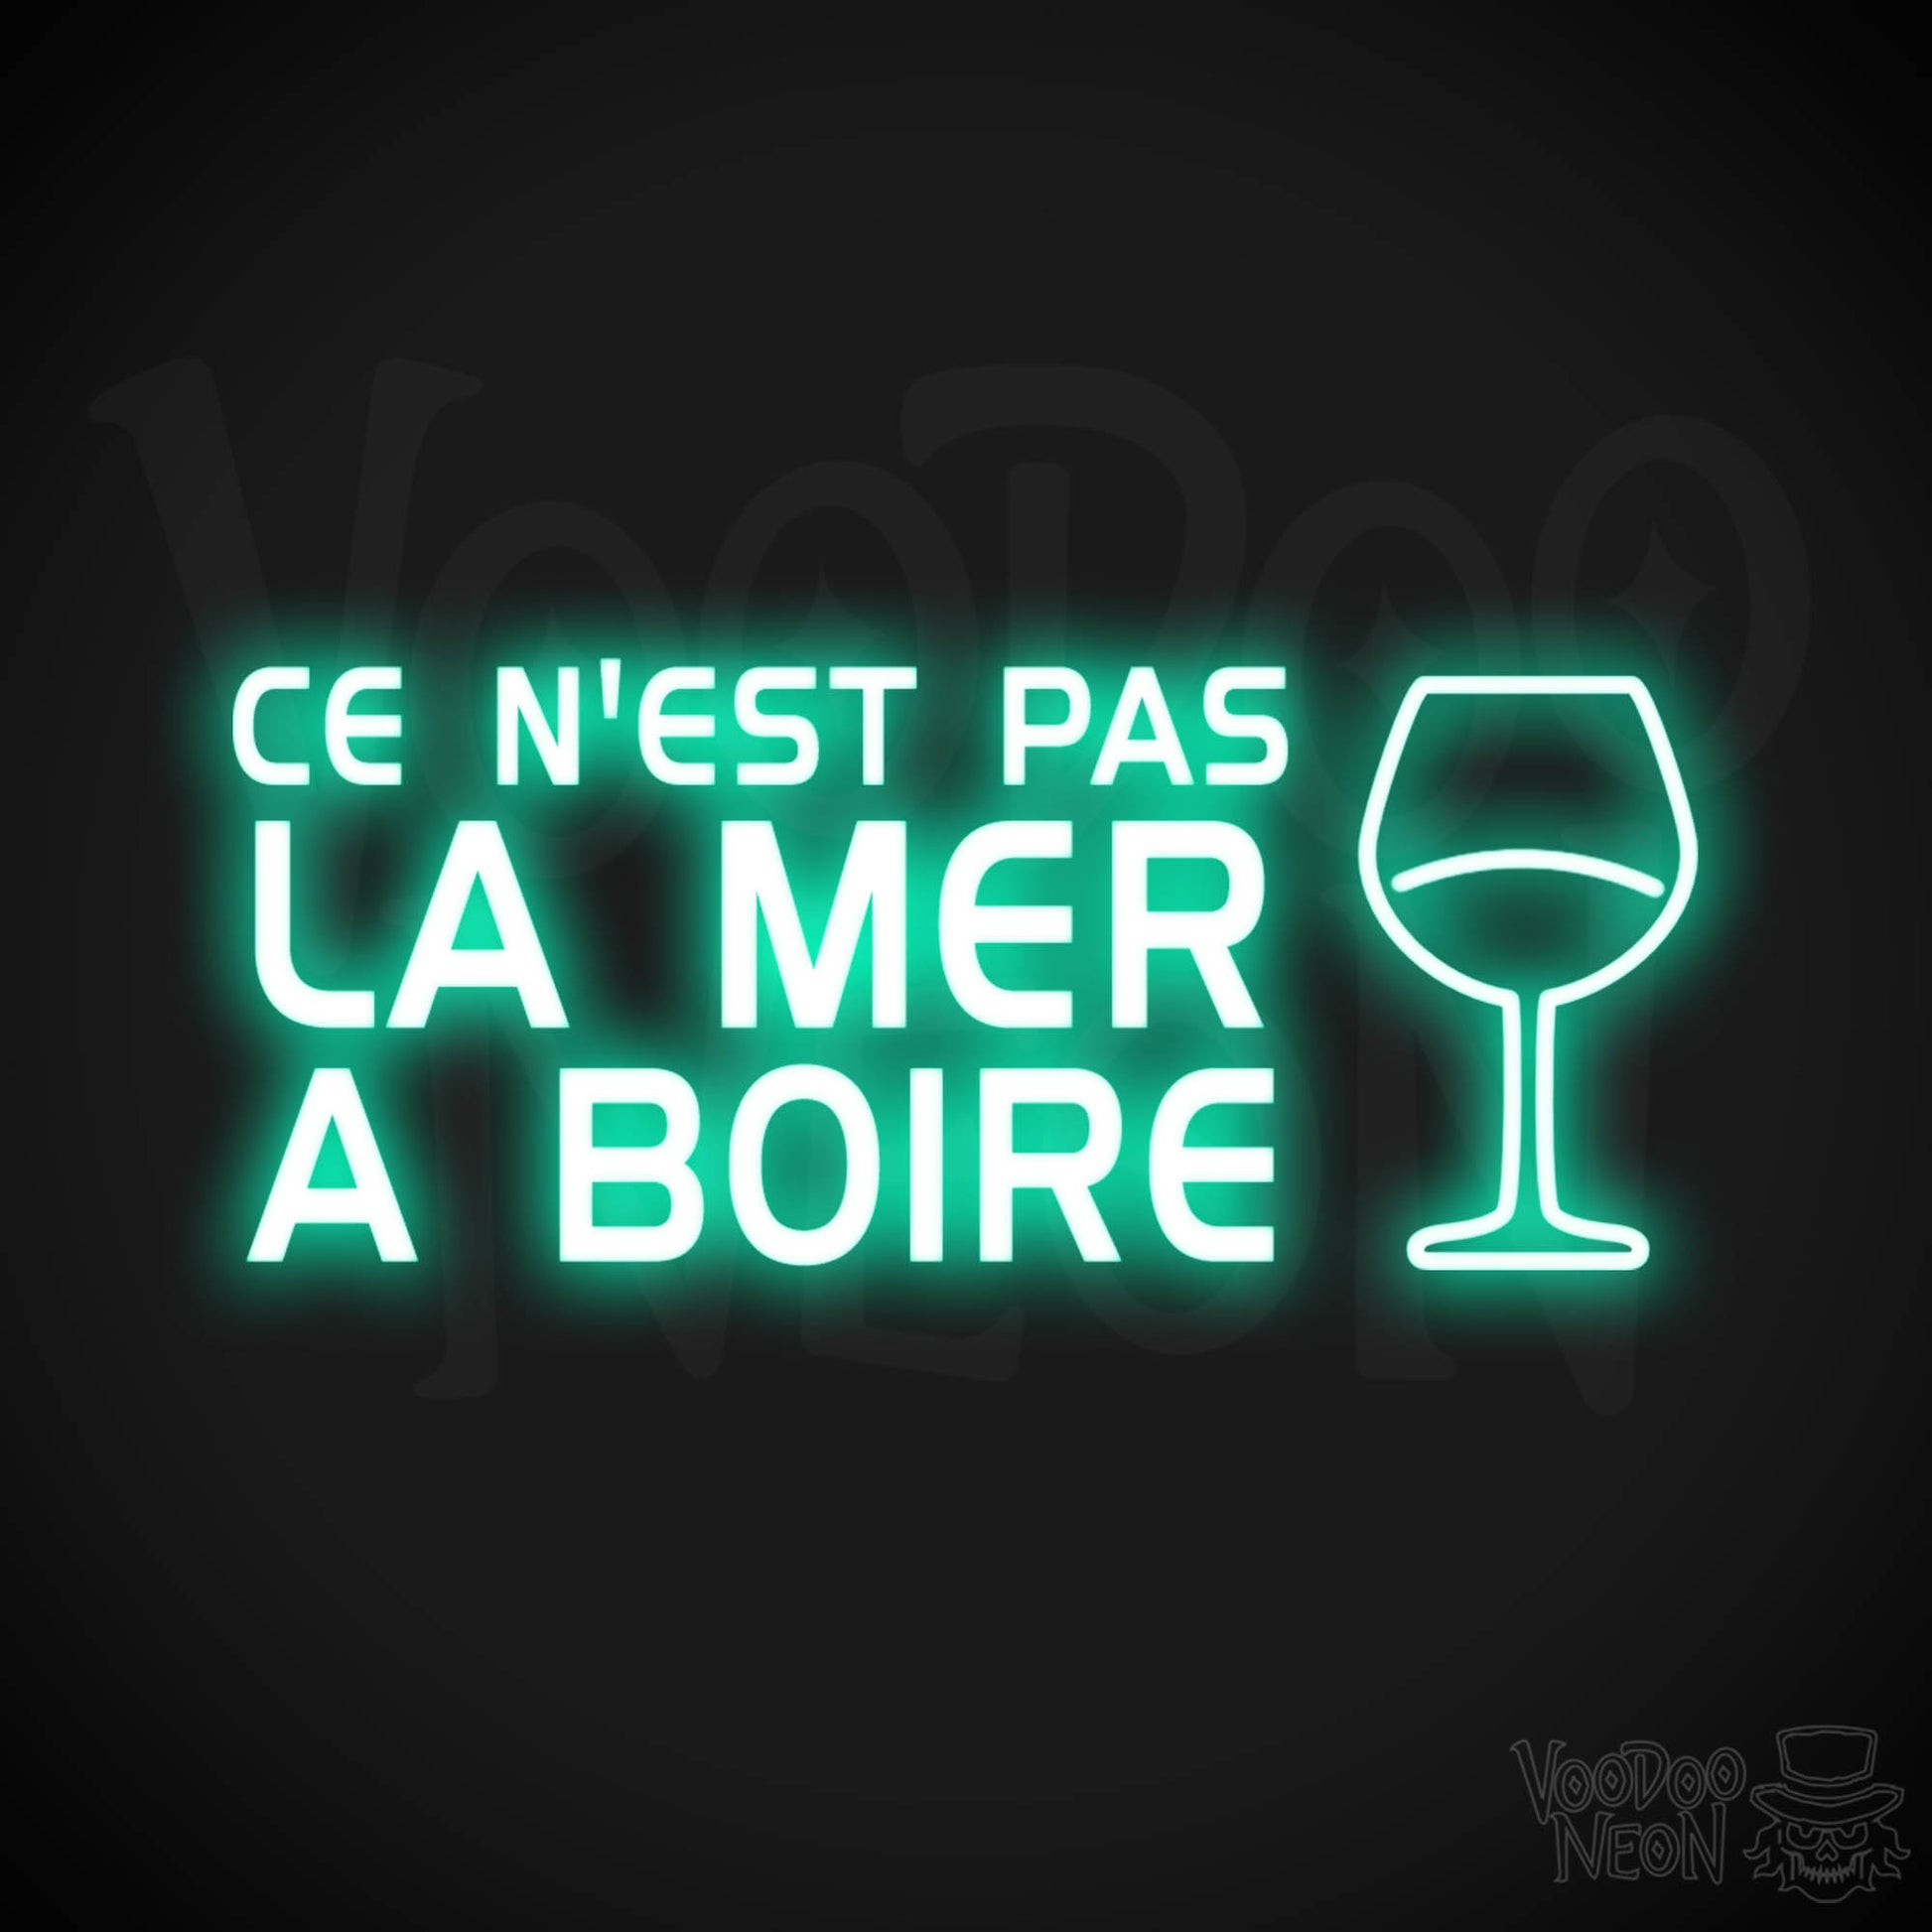 Ce N'est Pas La Mer a Boire Neon Sign - LED Lights - Color Light Green